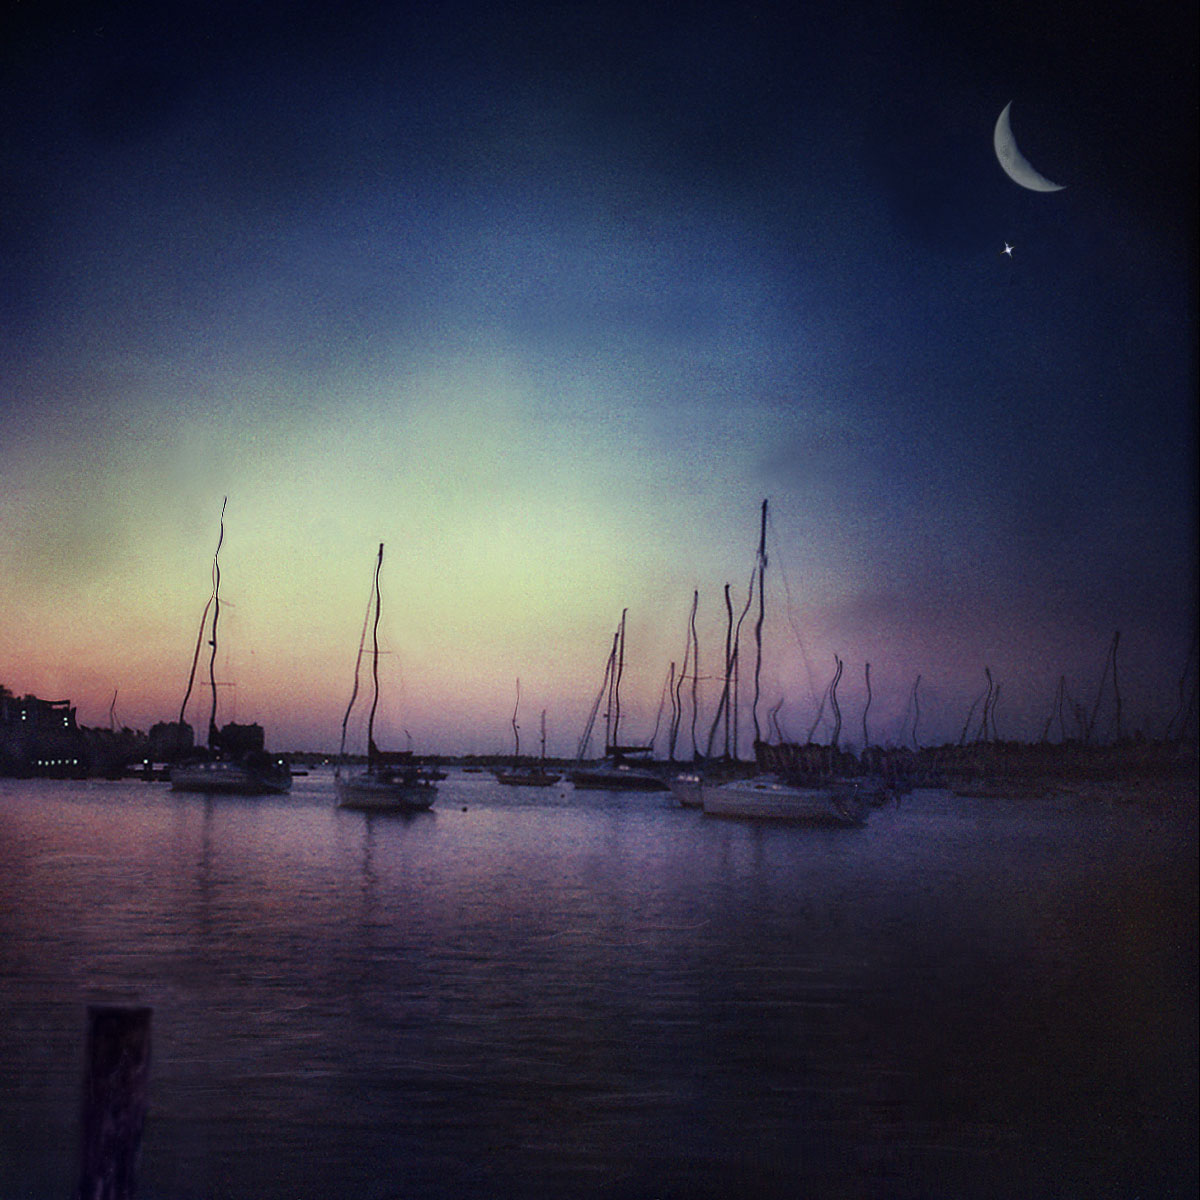 "Moonlight Marina" <br> Sailboats at Dinner Key Marina with Crescent Moon, Miami, FL